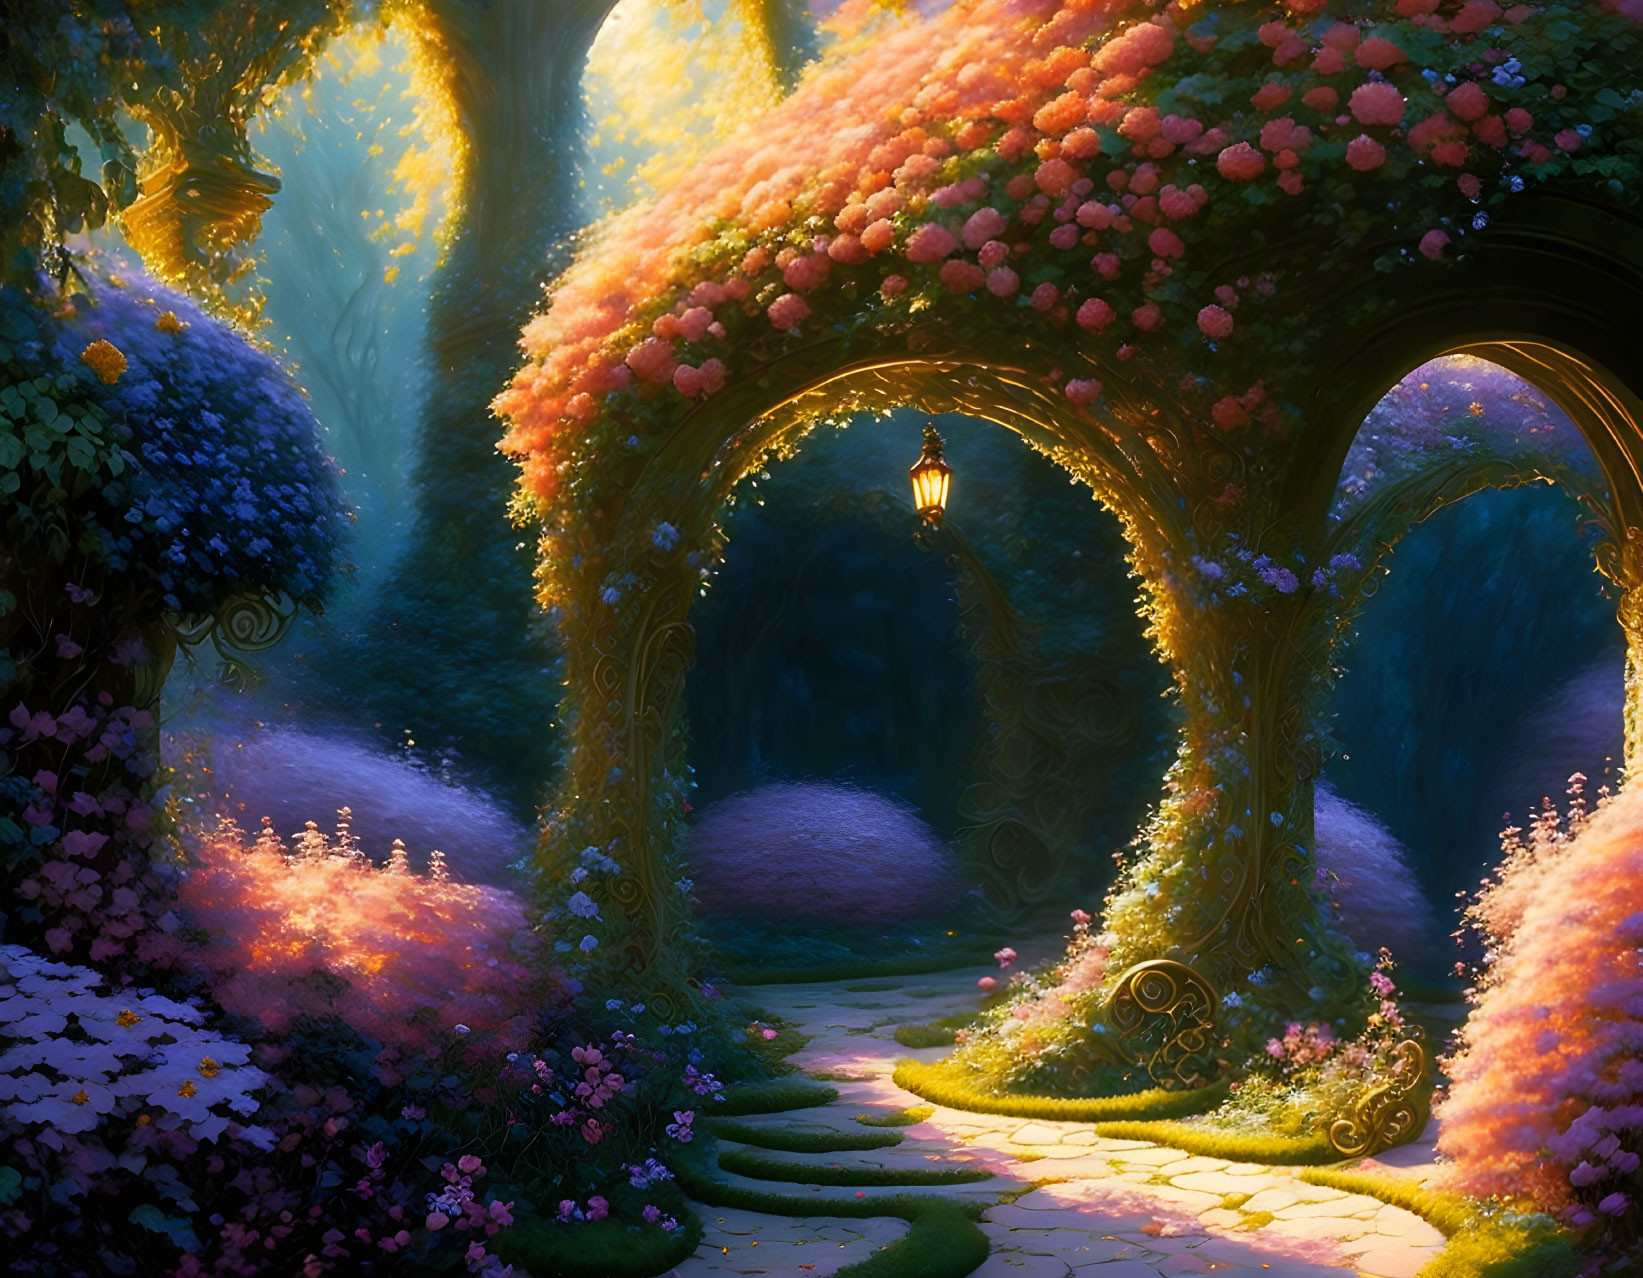 The Garden of a Thousand Dreams